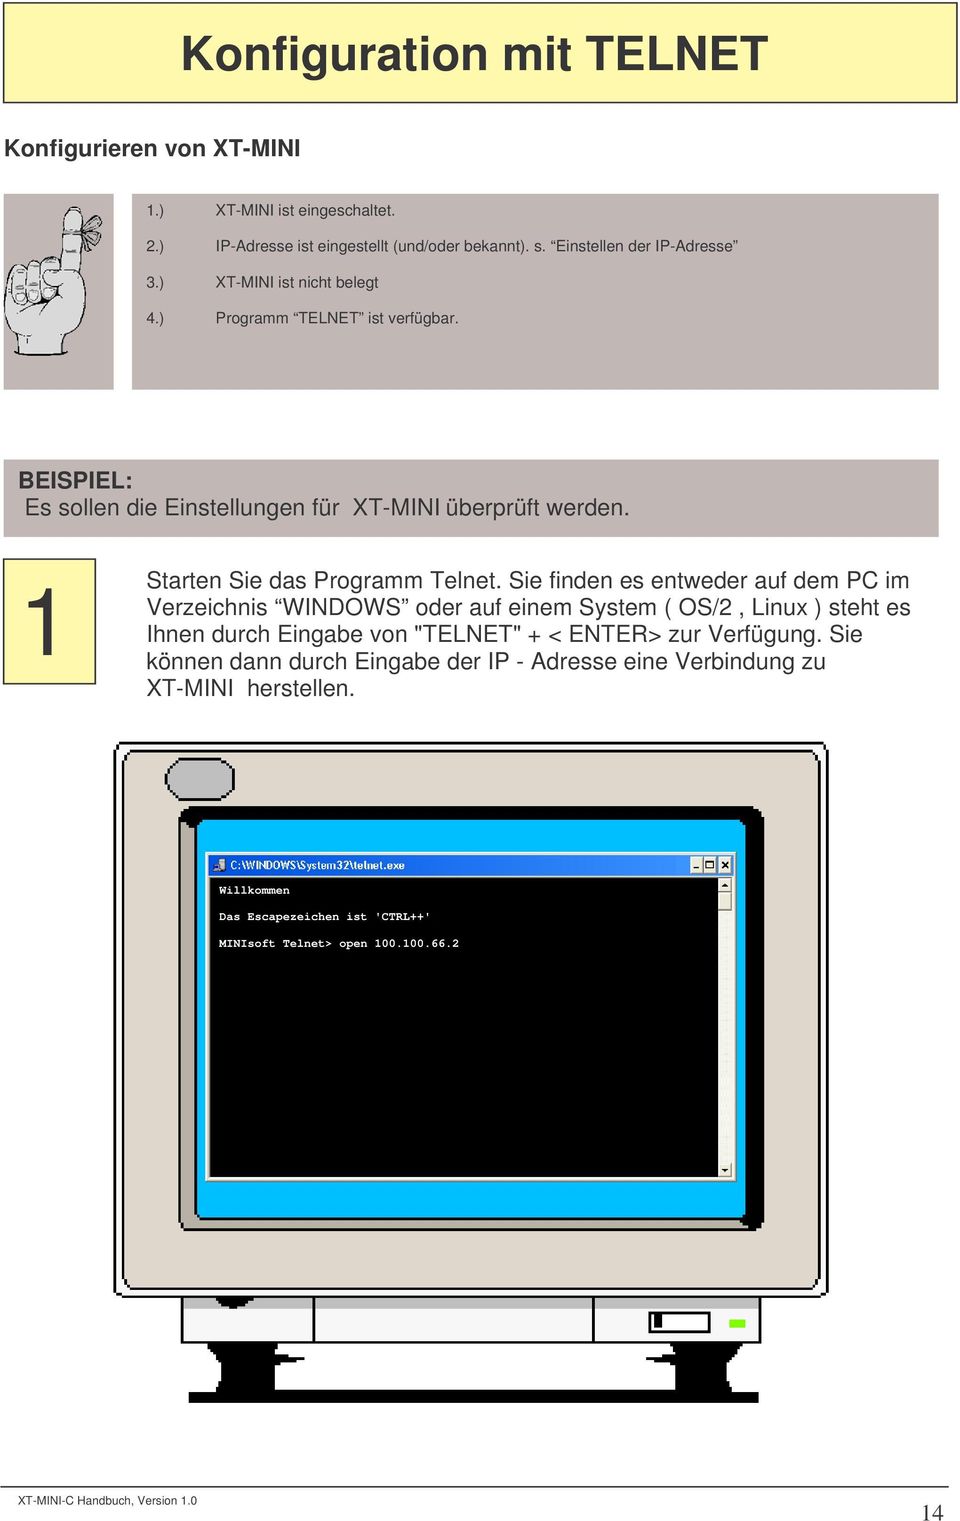 Sie finden es entweder auf dem PC im Verzeichnis WINDOWS oder auf einem System ( OS/2, Linux ) steht es Ihnen durch Eingabe von "TELNET" + < ENTER> zur Verfügung.